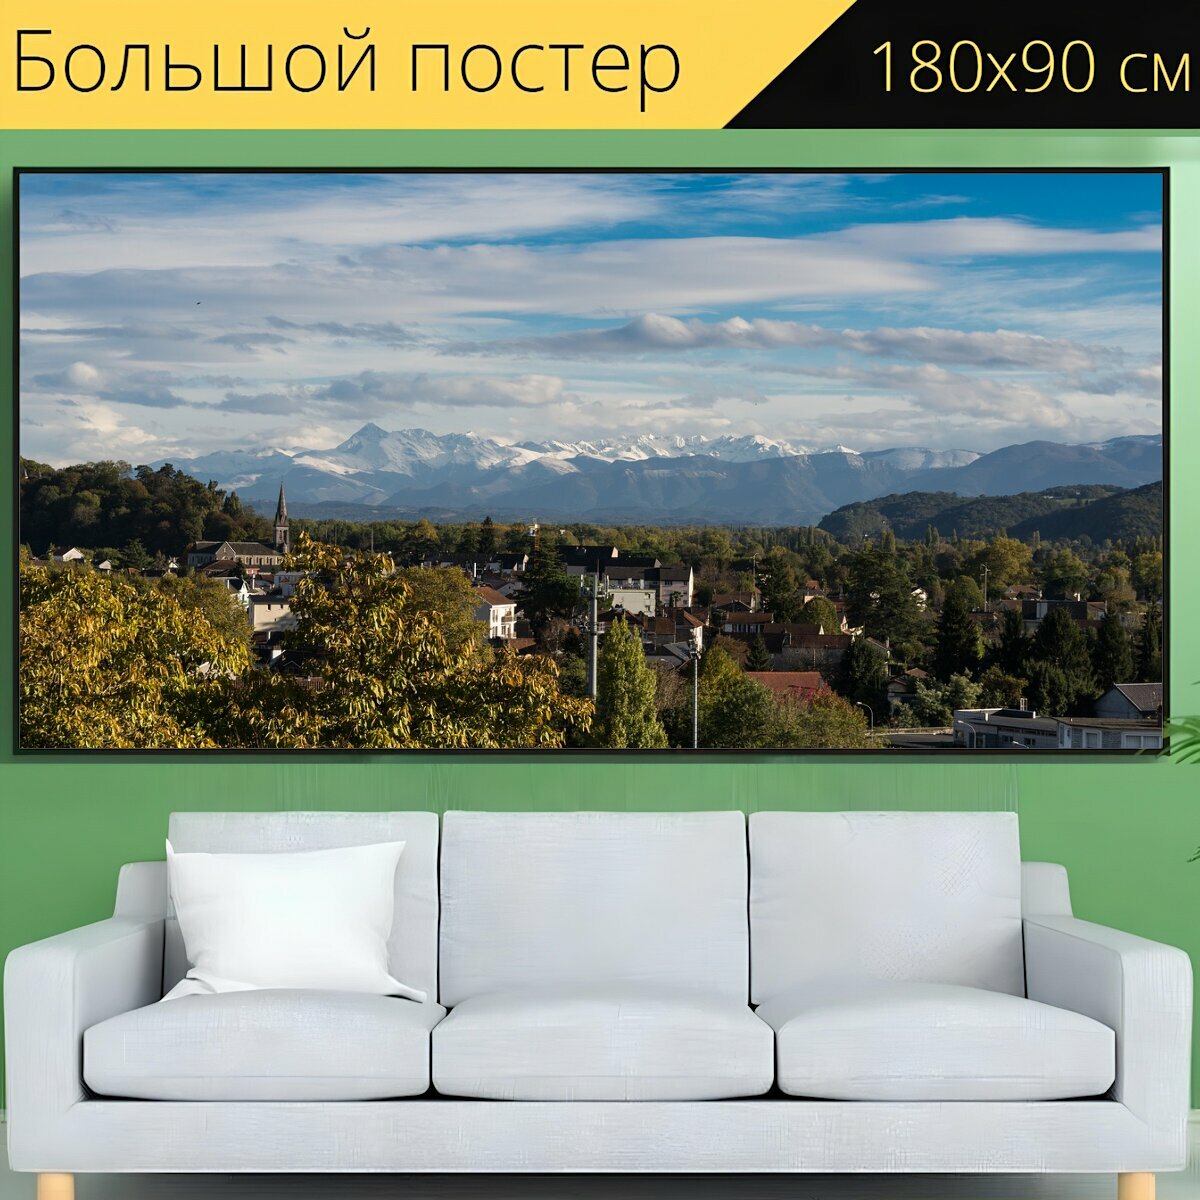 Большой постер "Франция, горы, пейзаж" 180 x 90 см. для интерьера